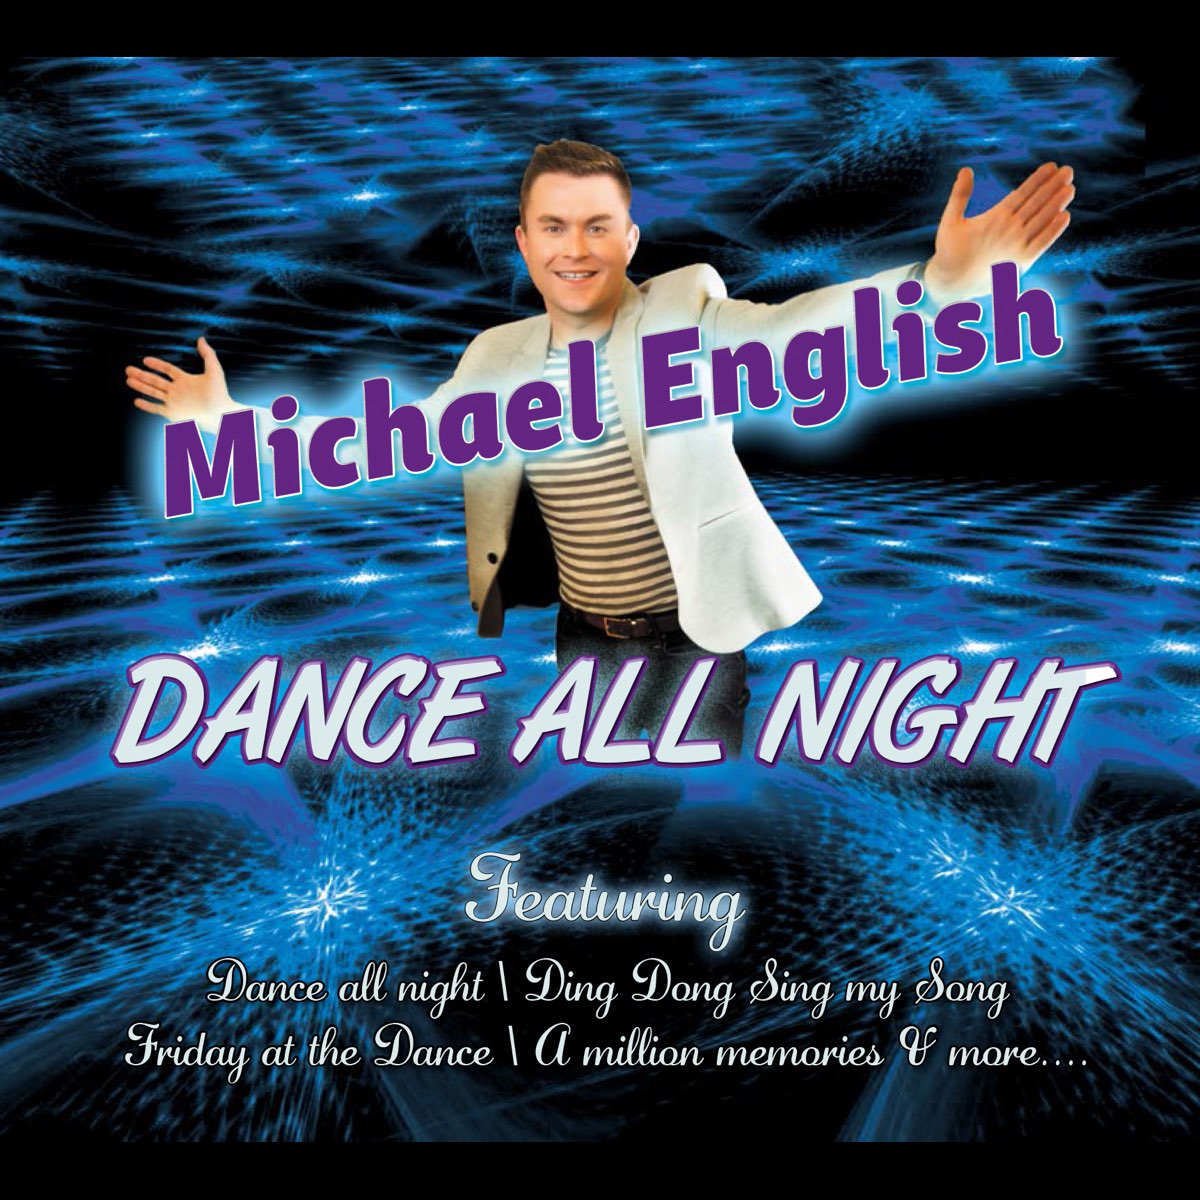 Послушать английские песни. Михаэль на английском. Dance all Night фото.